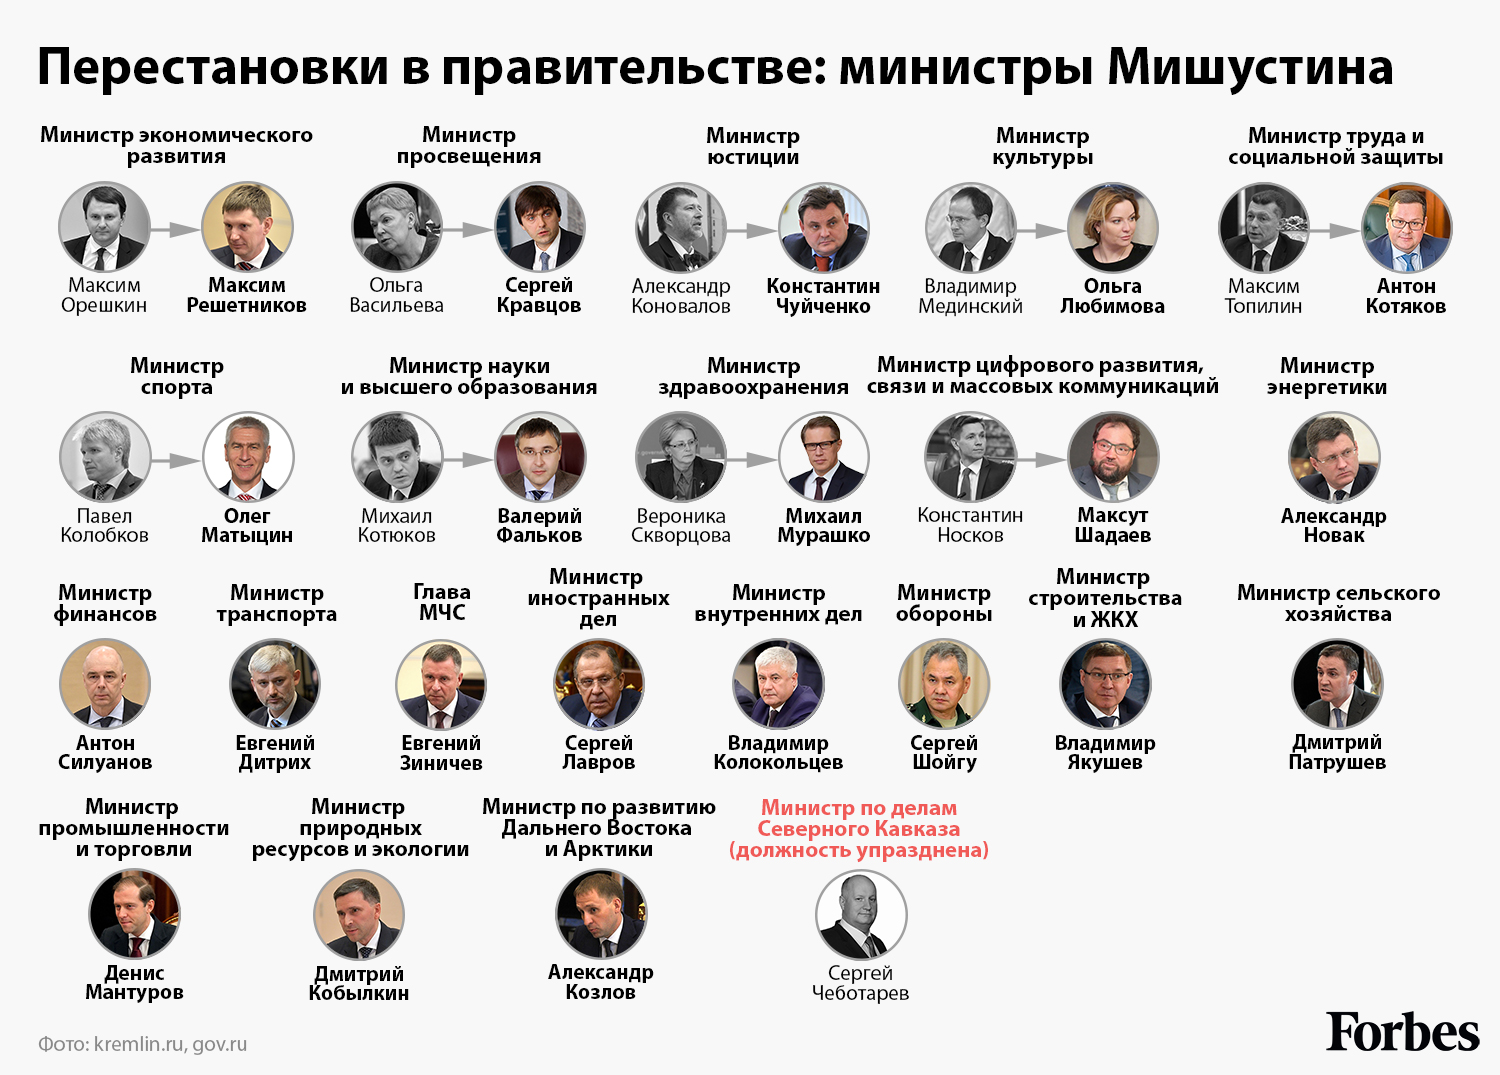 Правительство российской федерации консультант